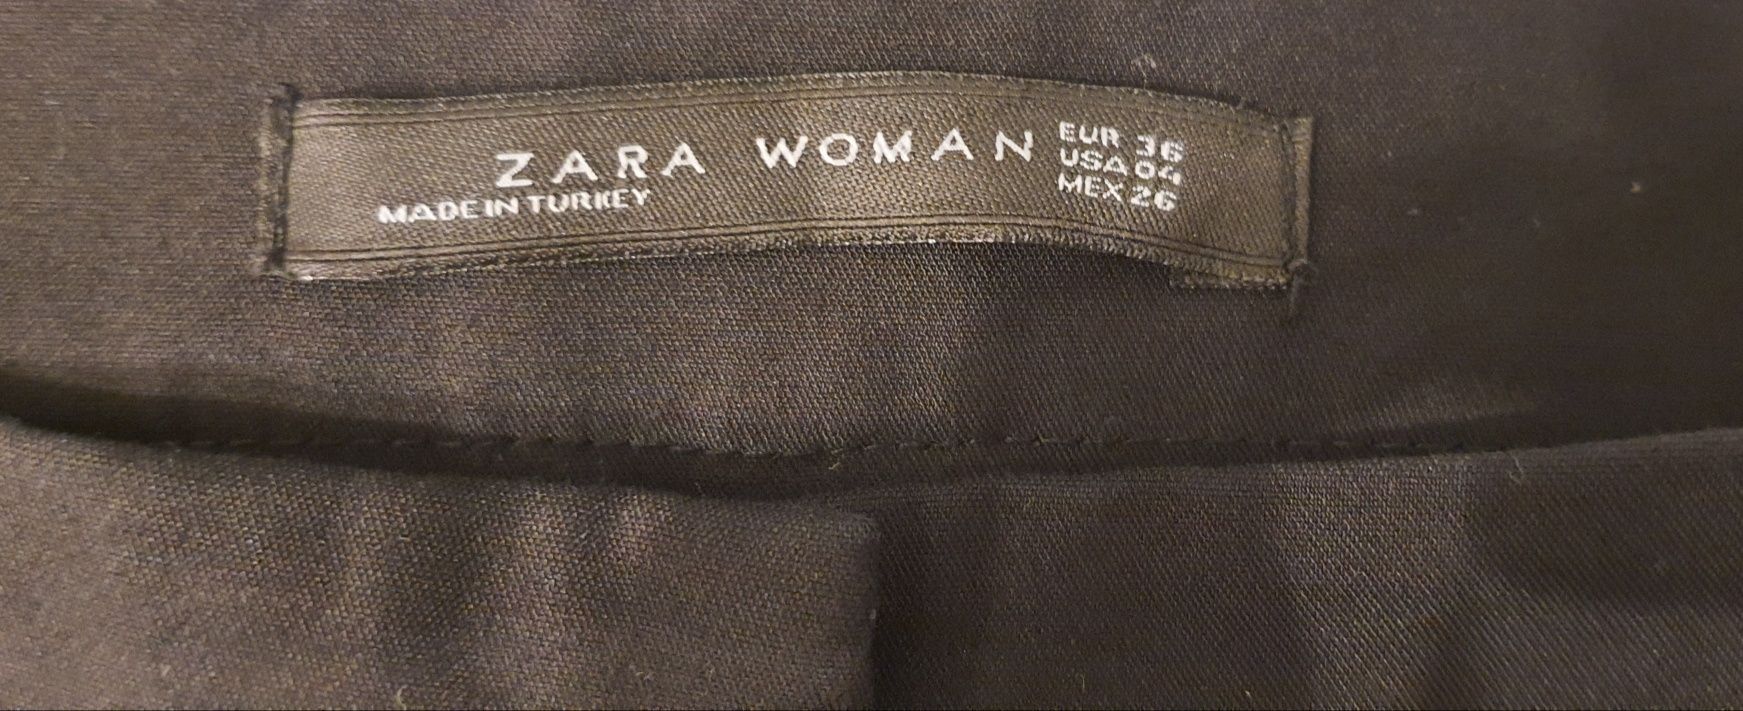 Spodnie na kant firmy Zara